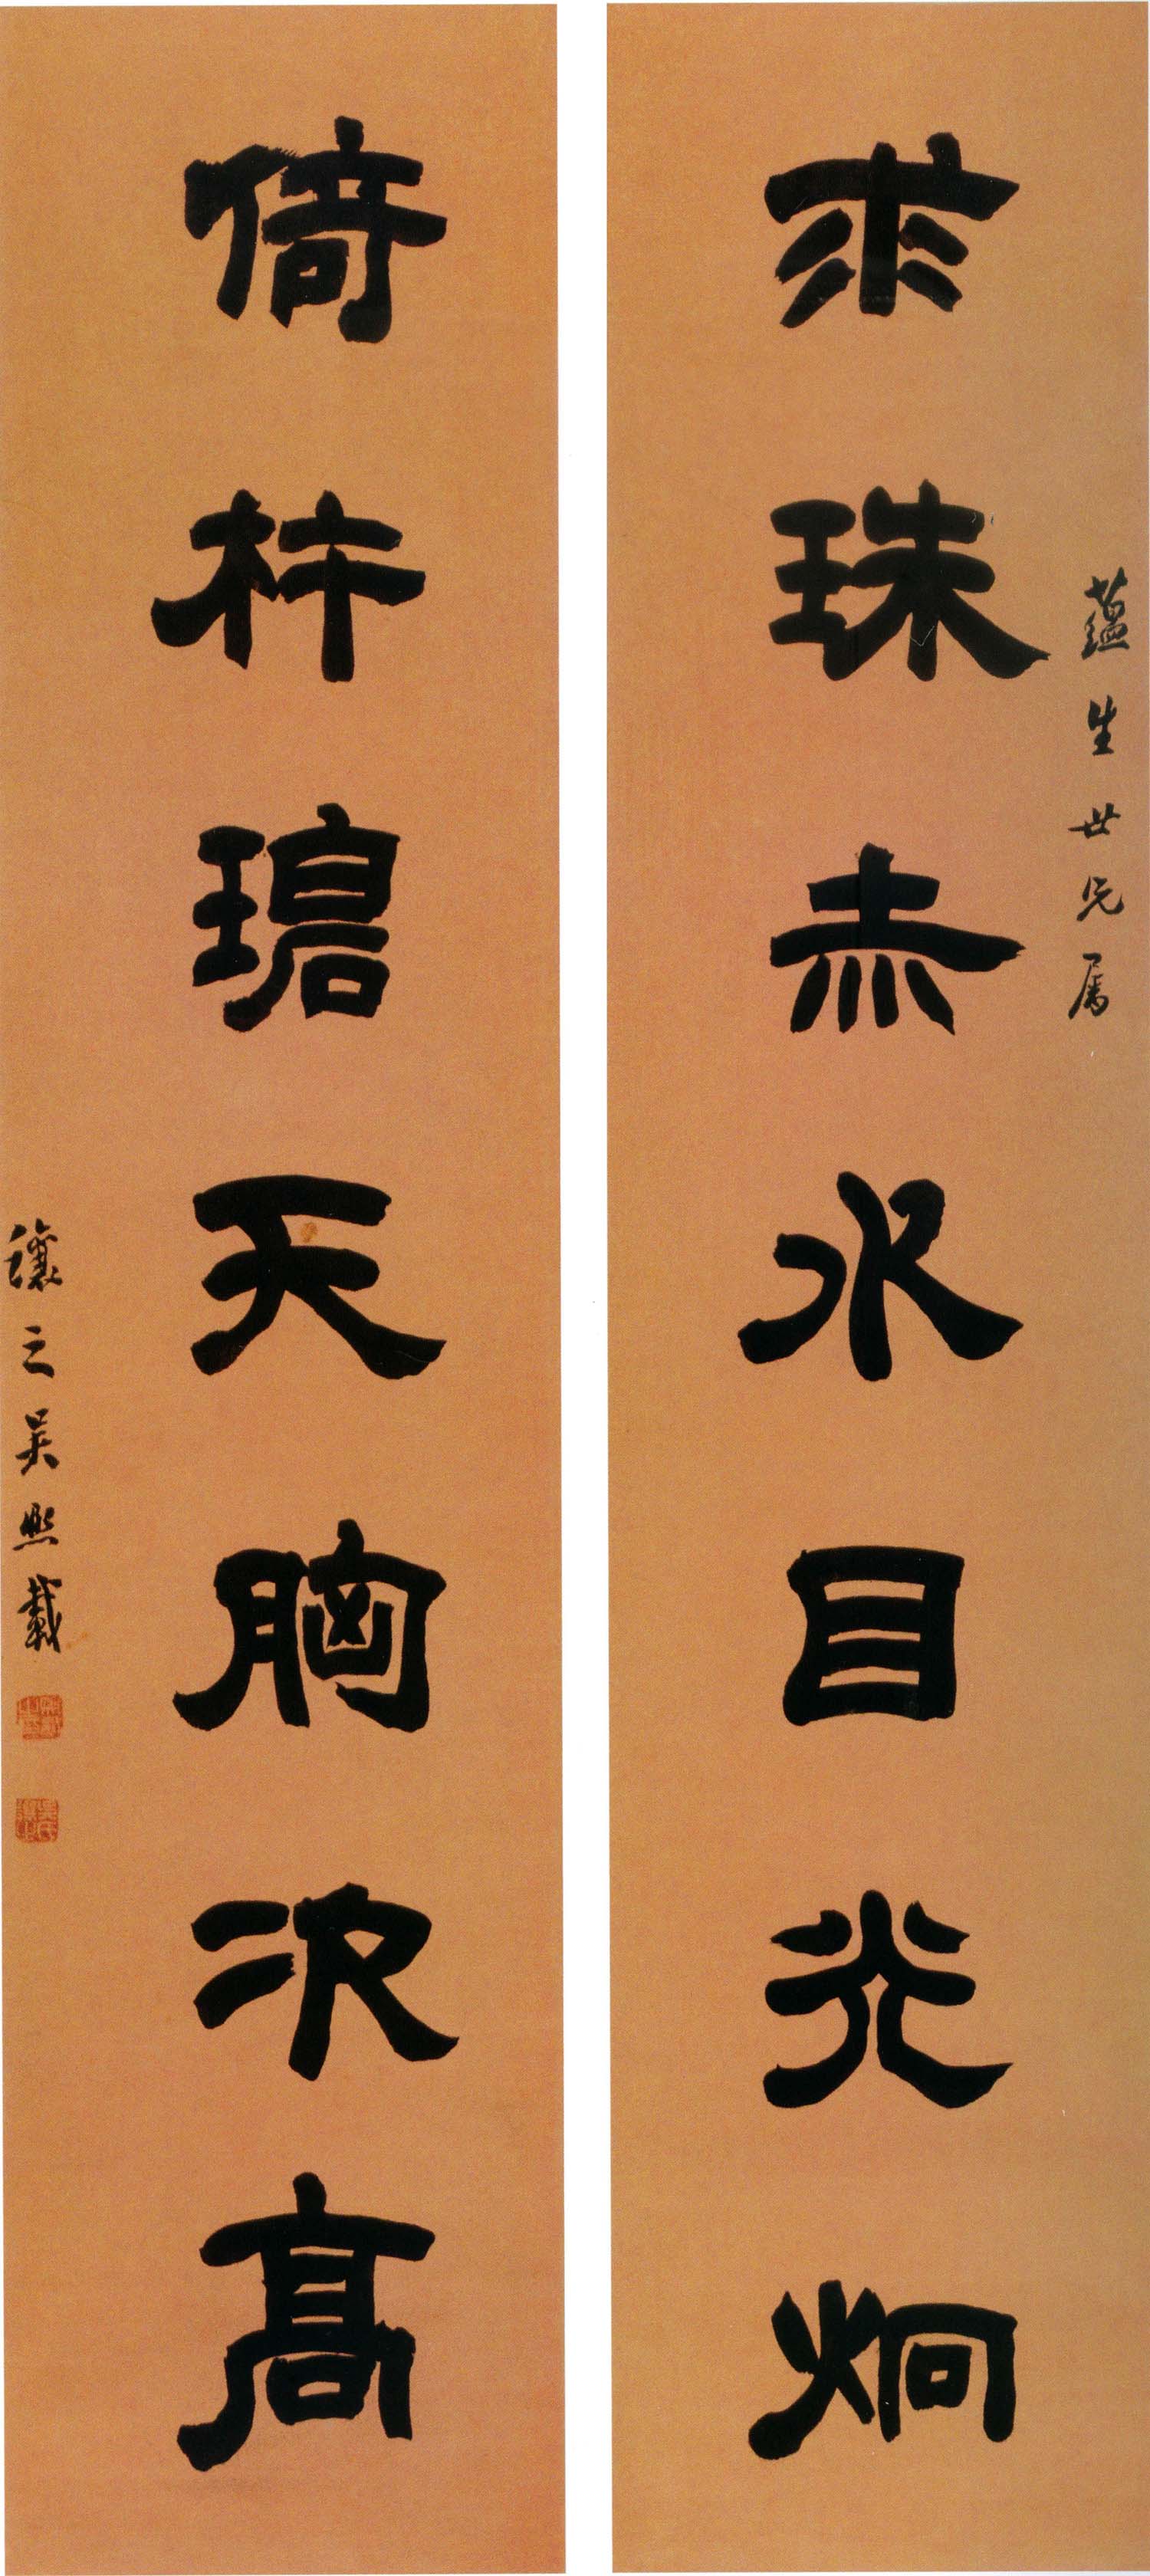 吴熙载《隶书求珠倚杵七言联》-北京故宫博物院藏(图1)